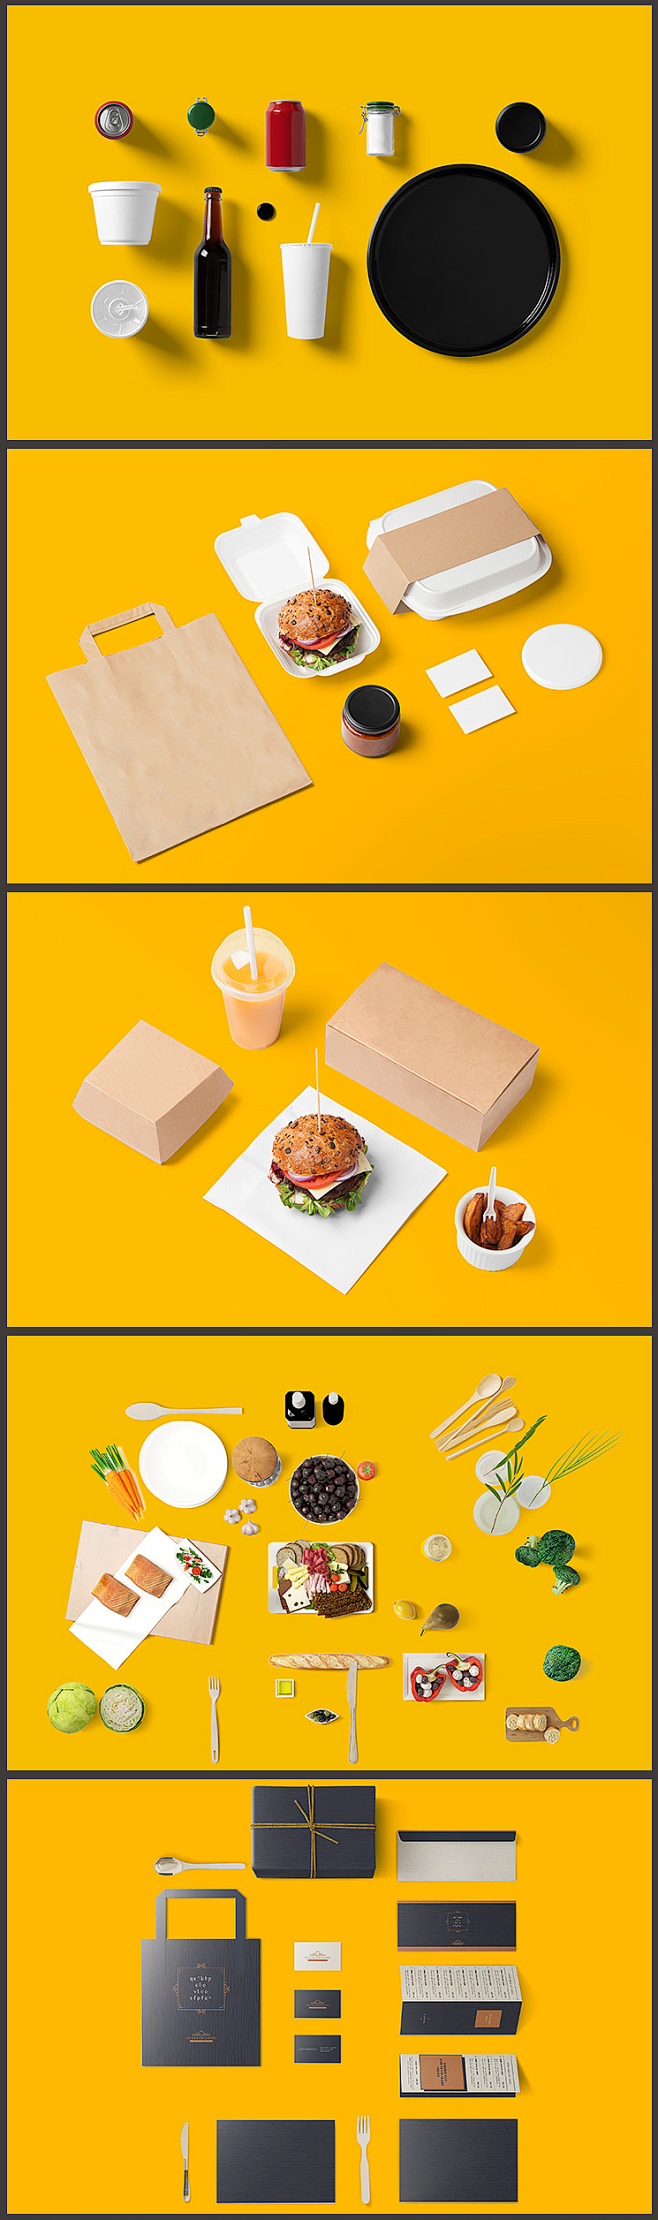 中式餐饮VI素材设计贴图模板PSD样机效...